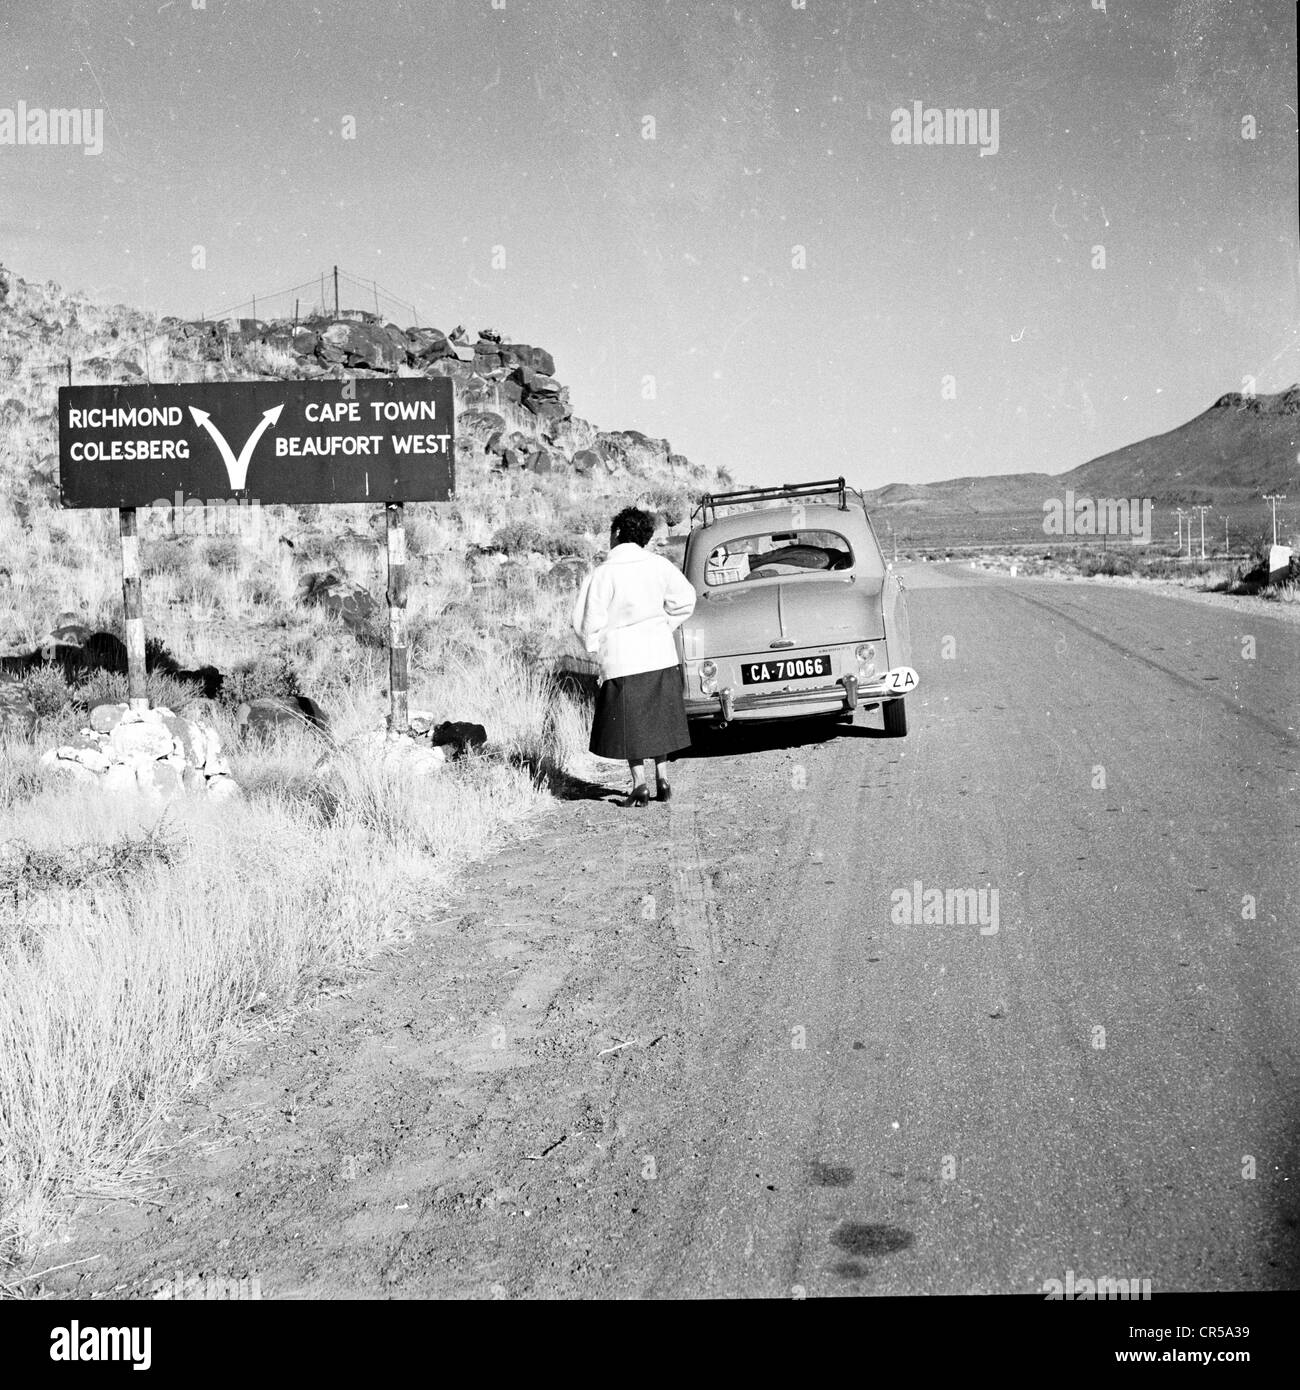 Südafrika, 50er Jahre. Eine Dame, die hinter ihrem kleinen Auto auf einer staubigen, leeren Straße im Outback des riesigen afrikanischen Landes stand, schaute auf eine Straße oder ein Richtungsschild und zeigte Pfeile zu verschiedenen Orten, darunter Kapstadt, Beaufort West, Richmond und Colesberg. Stockfoto